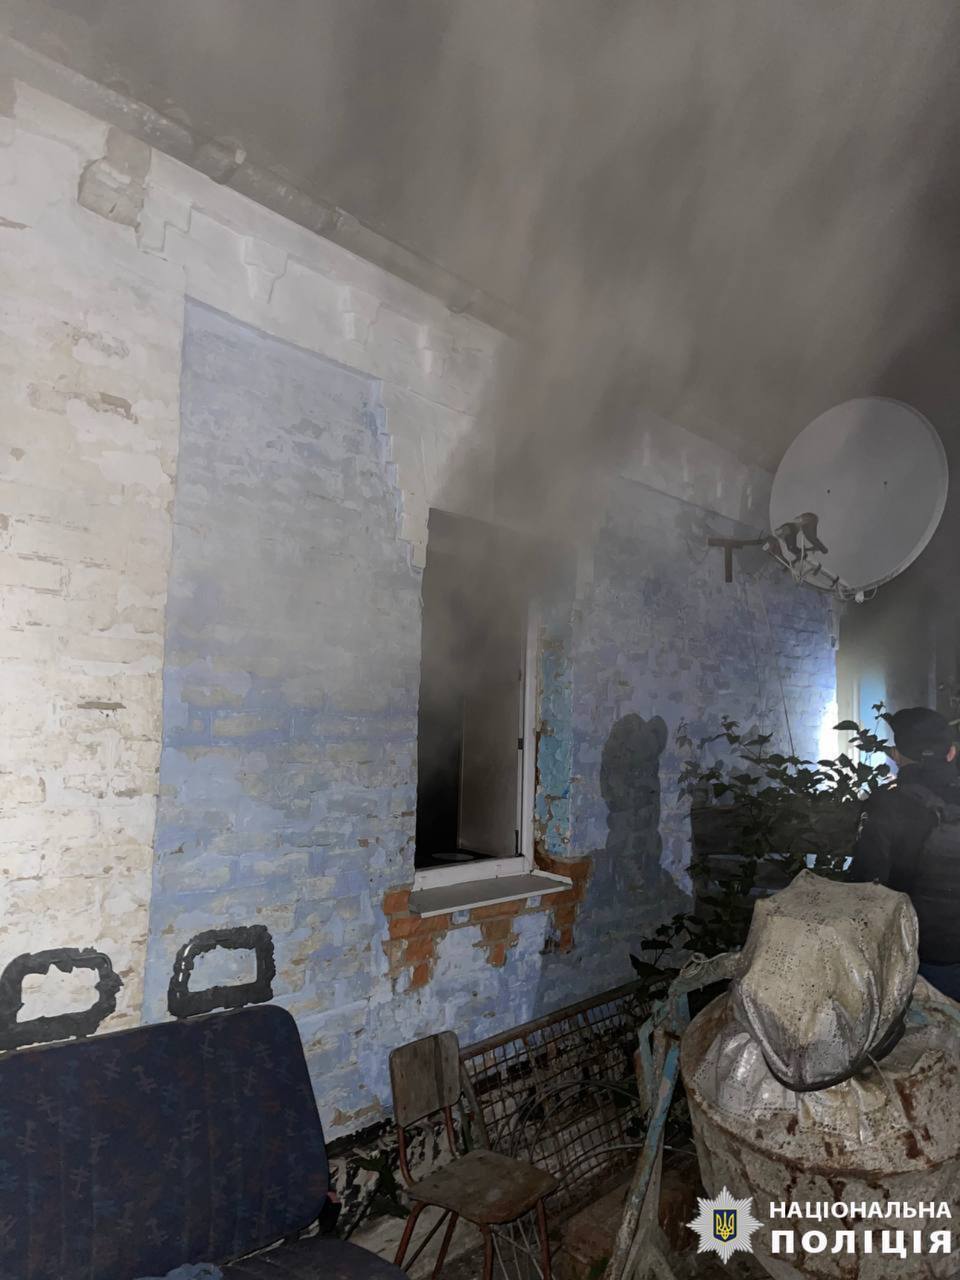 На Київщині під час гасіння пожежі у приватному будинку виявили тіло чоловіка. Подробиці трагедії